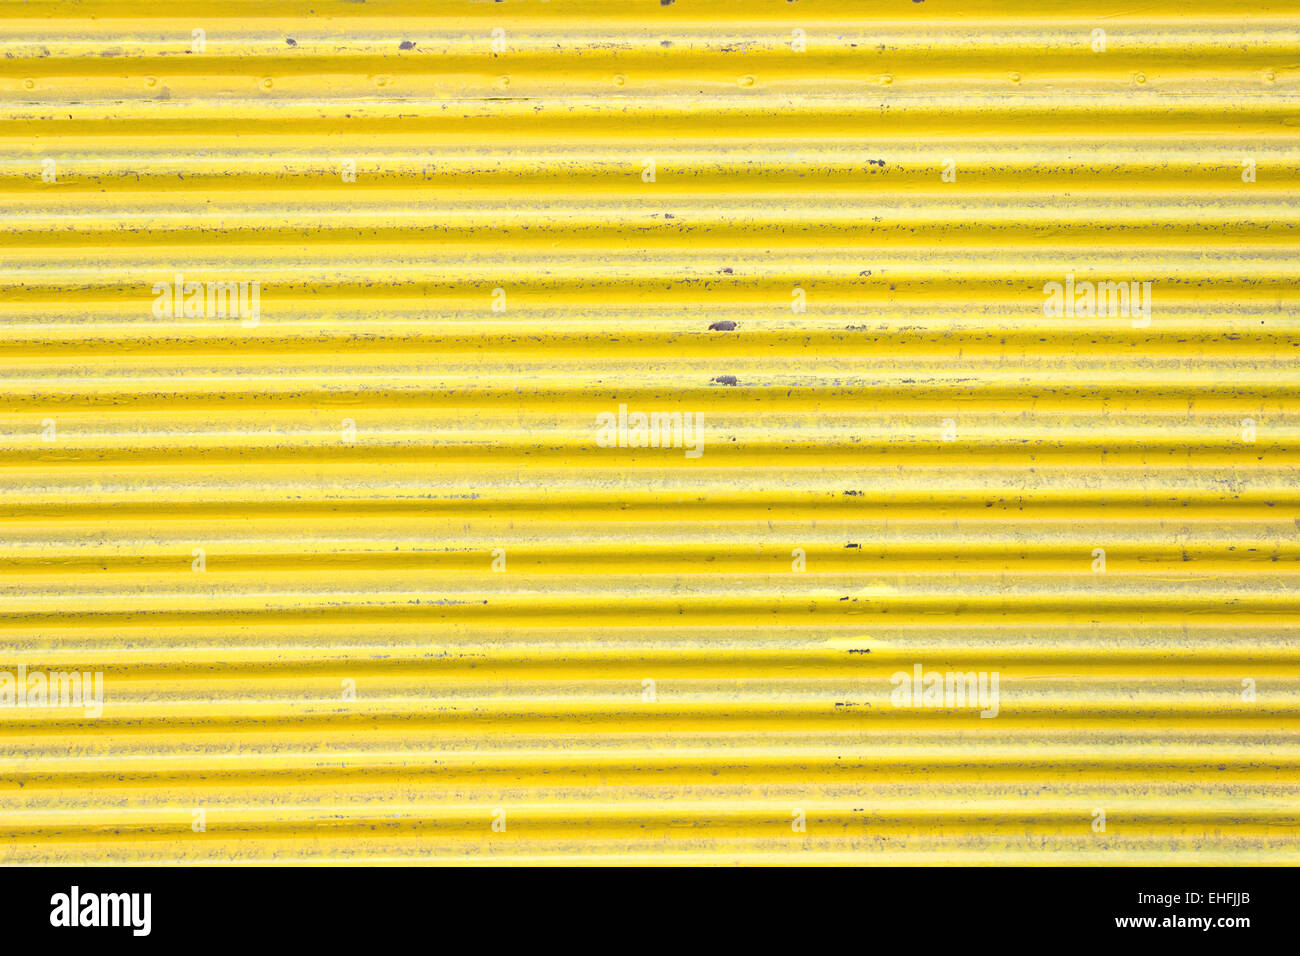 Hoja de metal corrugado amarillo puerta corredera como fondo Foto de stock